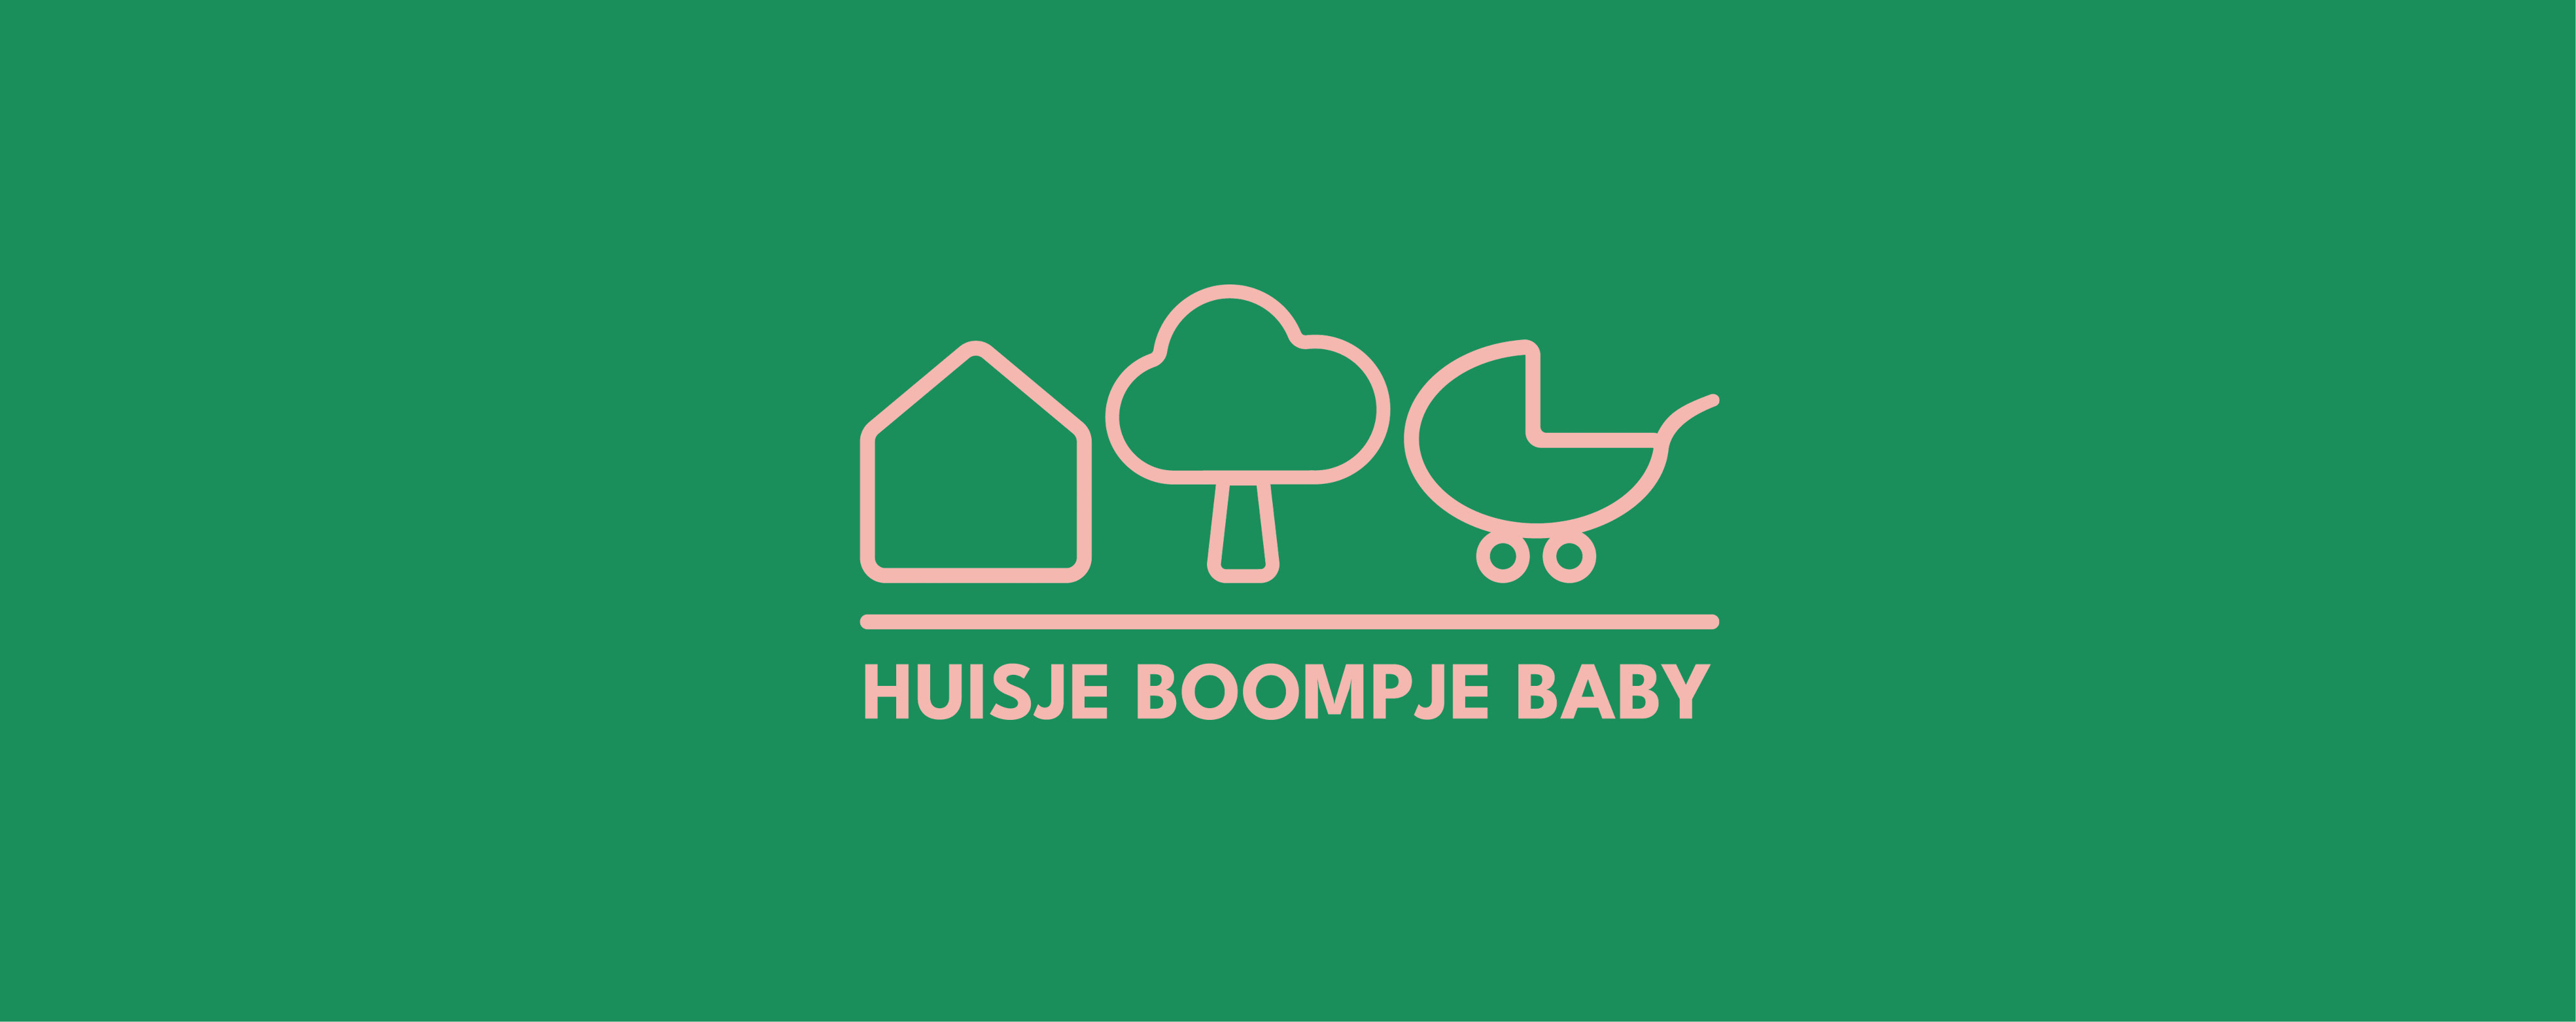 Huisje Boompje Baby event in het Martiniplaza te Groningen